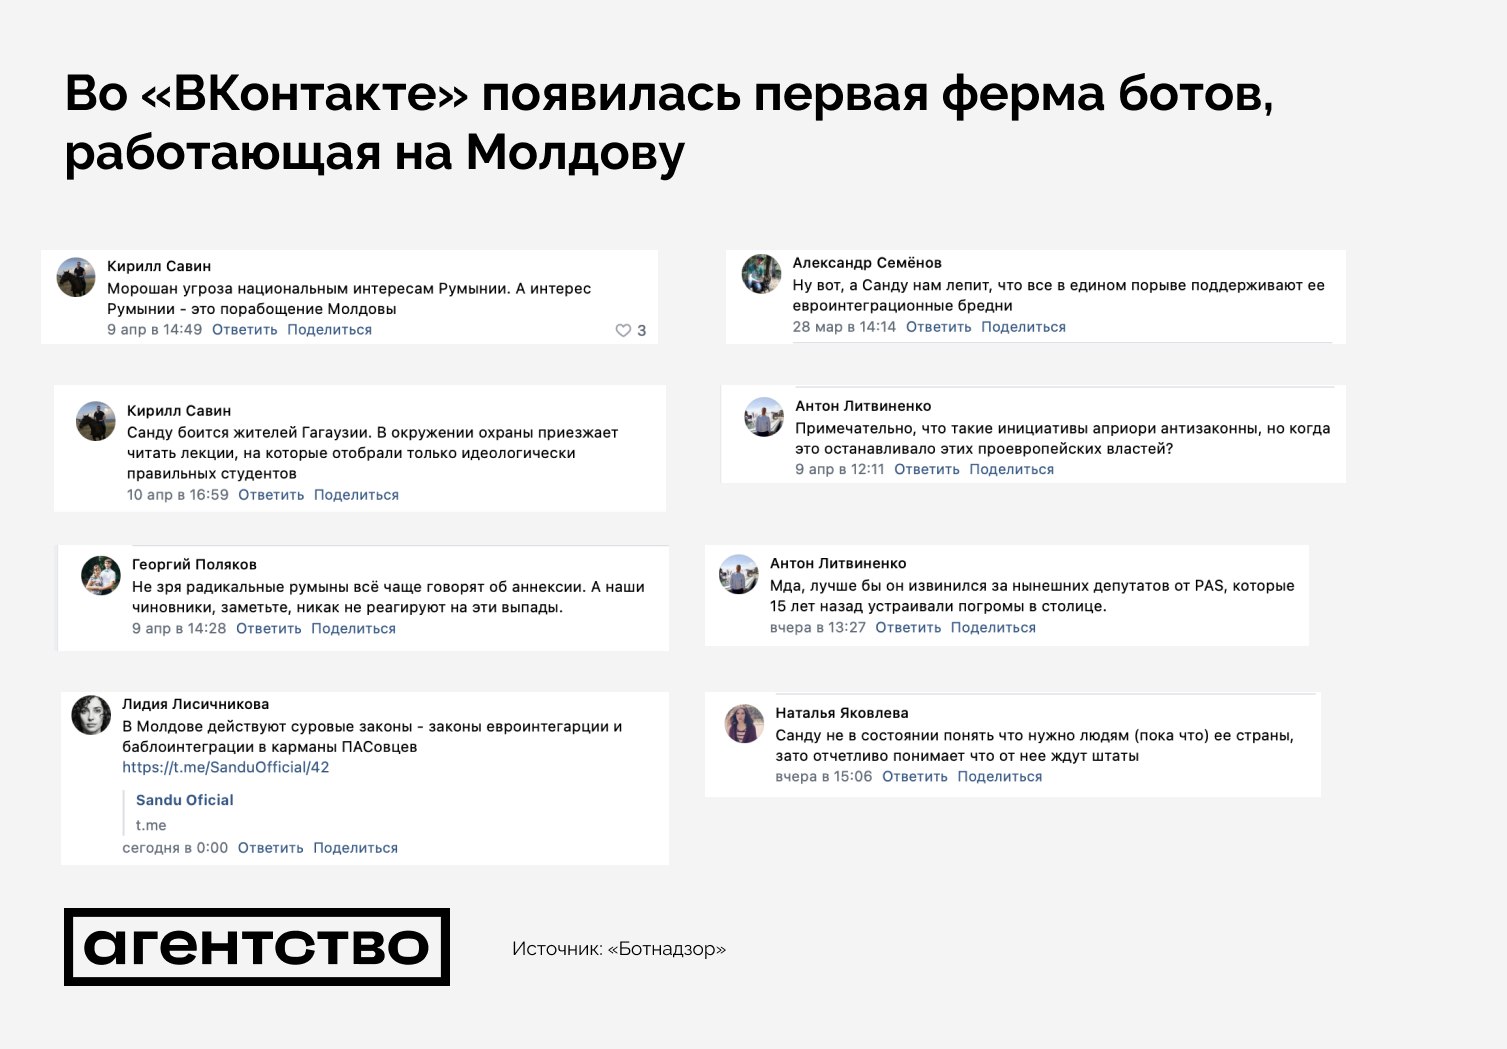 СМИ: во «ВКонтакте» появилась первая ферма ботов, работающая против властей Молдовы